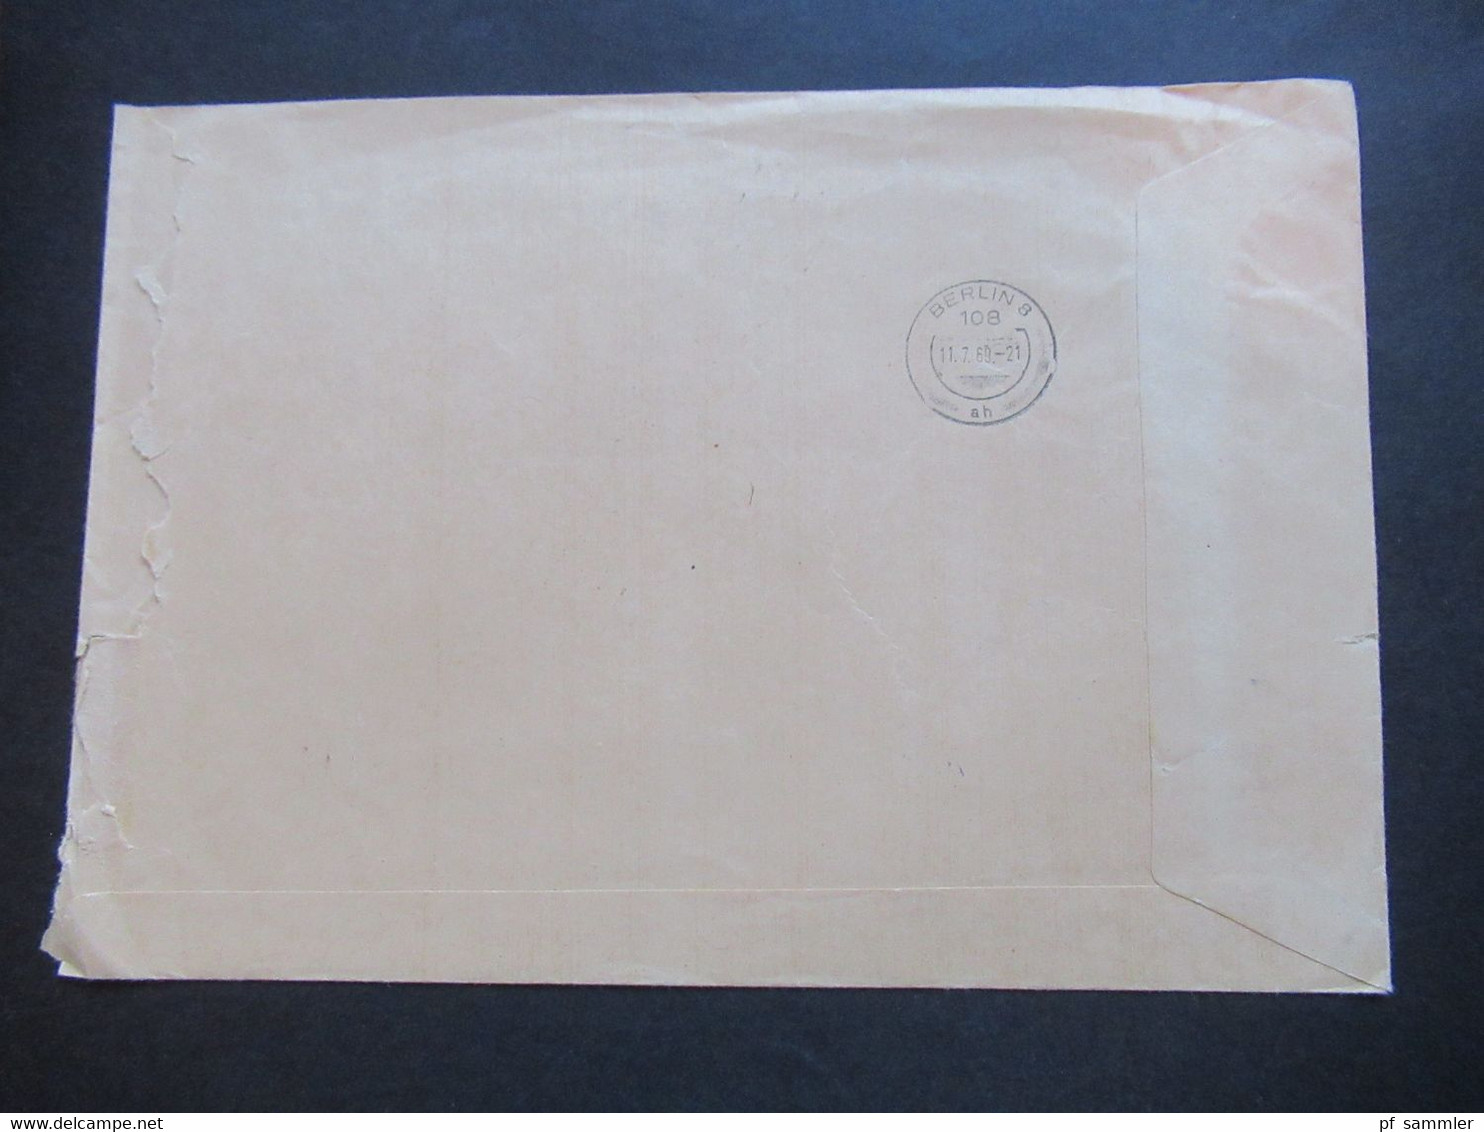 Dienst ZKD 1969 violetter AFS Ministerrat der DDR Ministerium der Finanzen ZKD Umschlag umgehend zurück an Poststelle